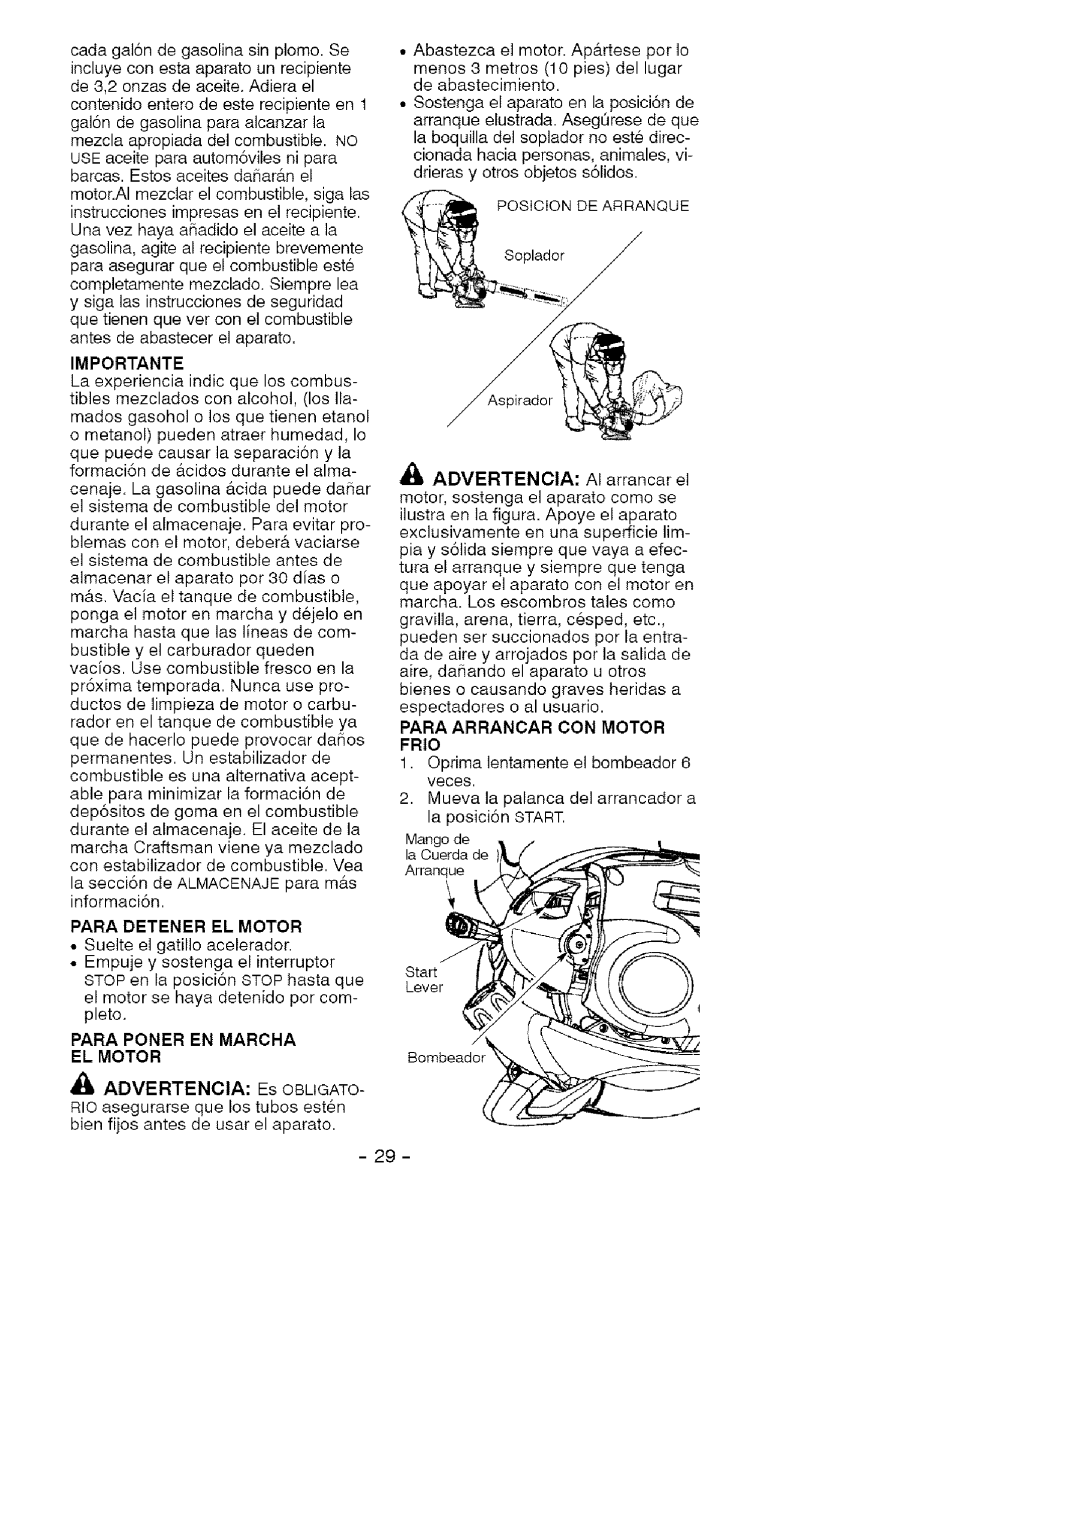 Craftsman 358.79476 manual Importante, Para Detener El Motor, Para Poner En Marcha El Motor 